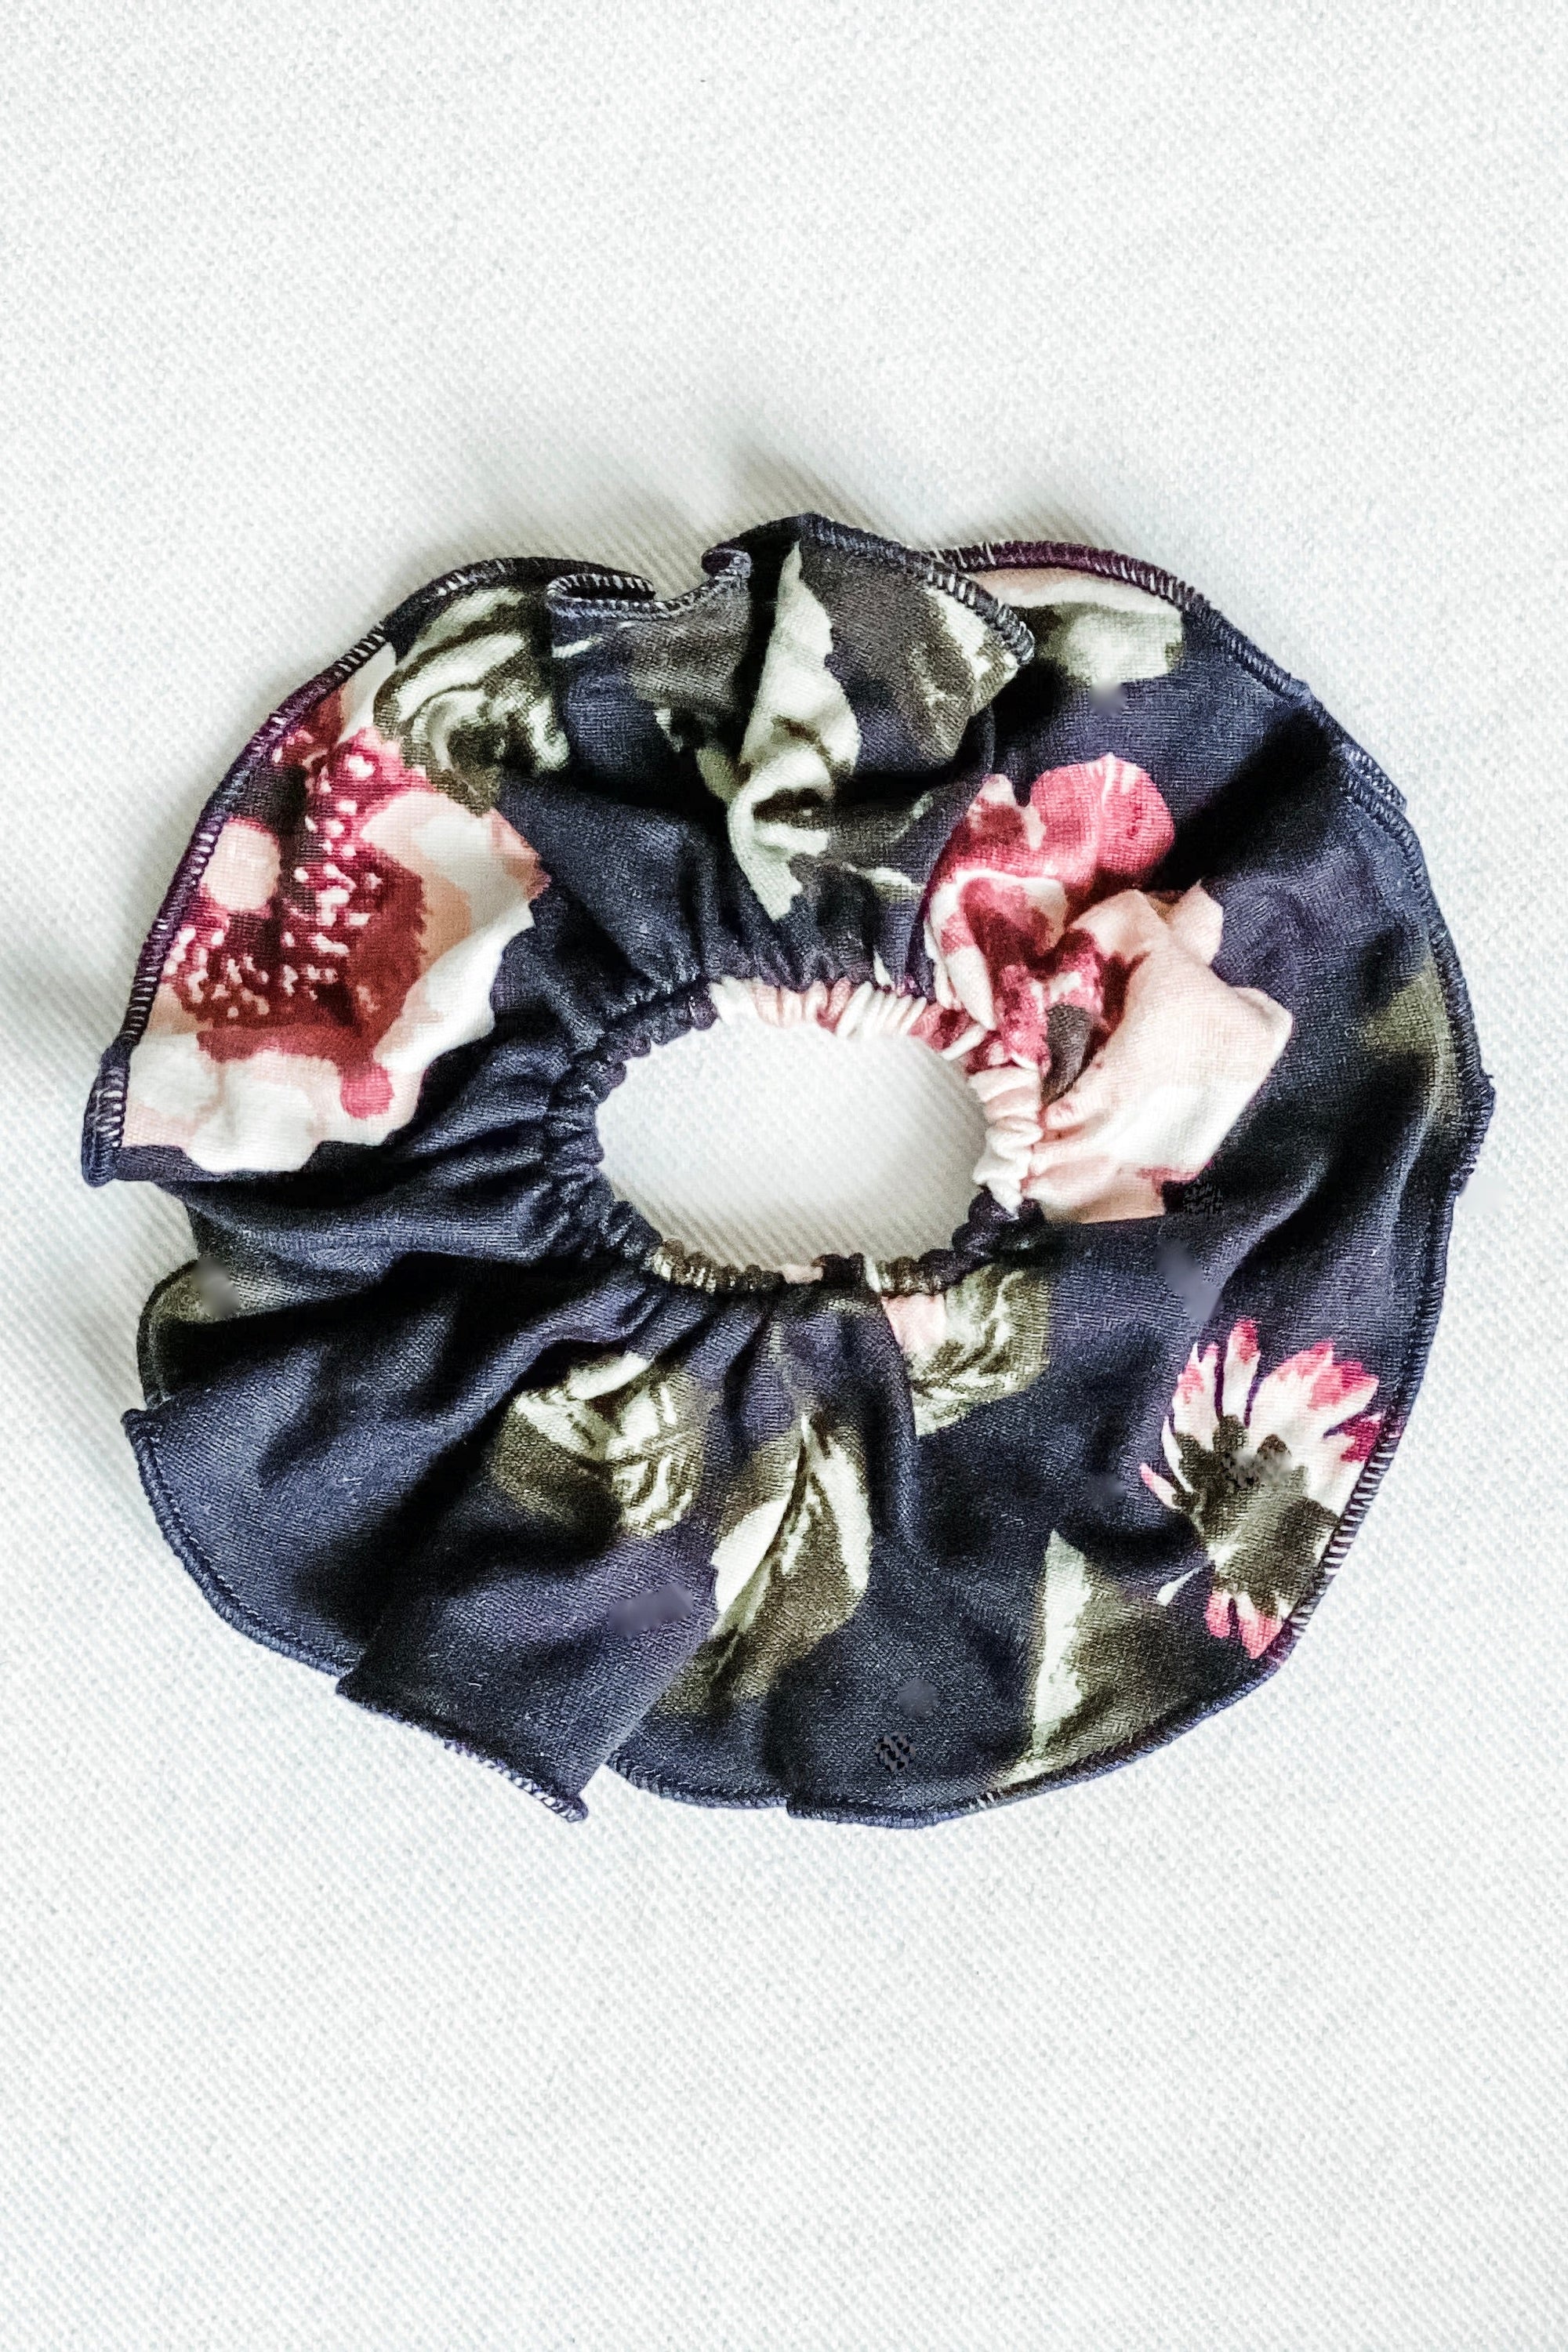 Diane Kroe - Scrunchies in Brushed Florals (Red Black Floral)